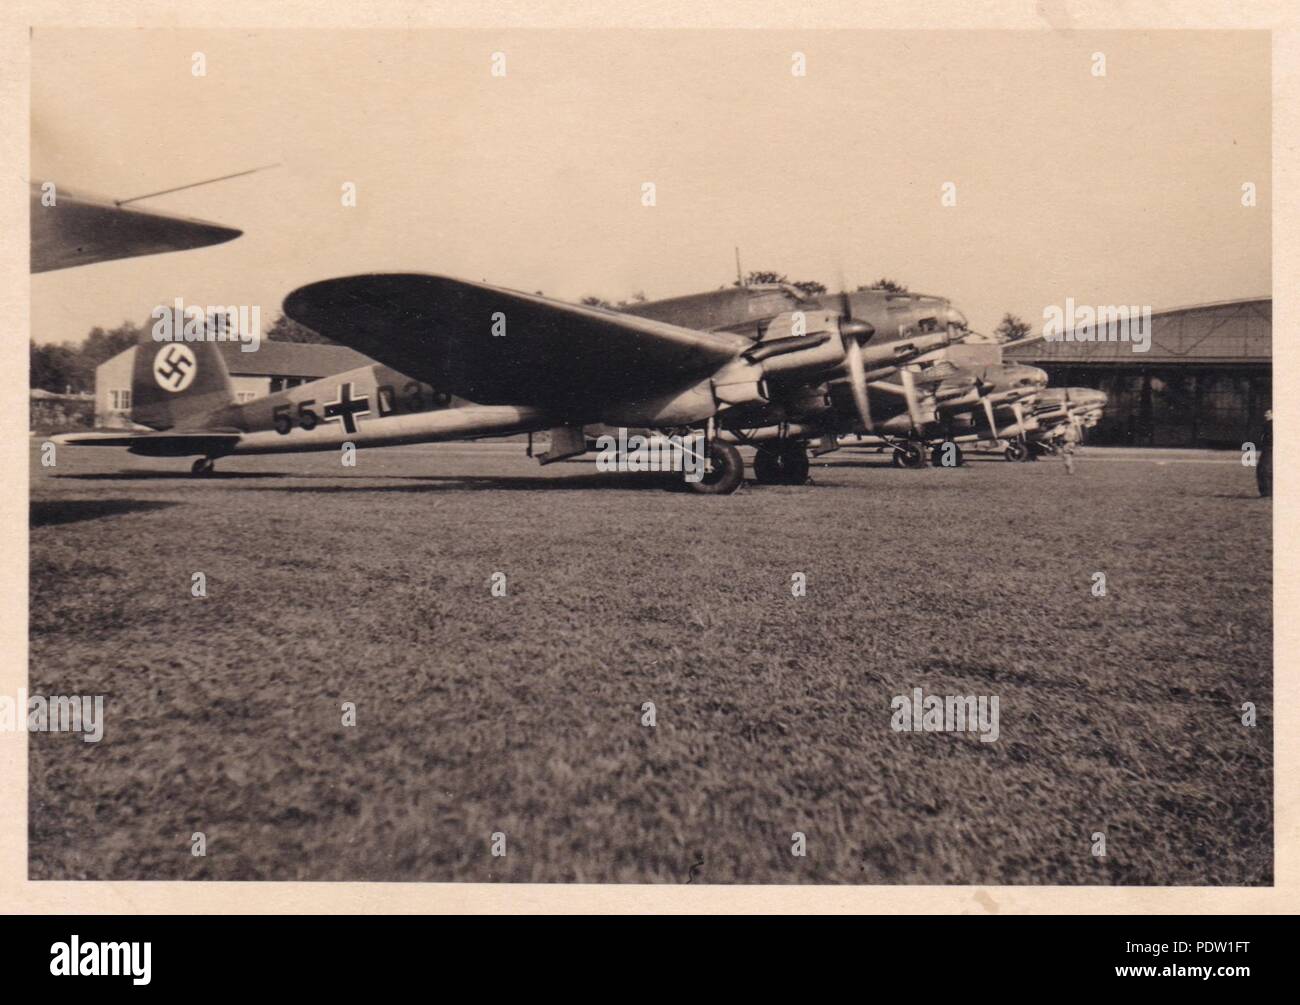 Droit de l'album photo de Karl Oberfeldwebel Gendner de 1. La Kampfgeschwader 40 Staffel, Heinkel He 111 : E-1 du 8./KG 355 exécuter leurs moteurs avant le décollage de l'Aérodrome de Giebelstadt en octobre 1938, lors de la crise des Sudètes Banque D'Images